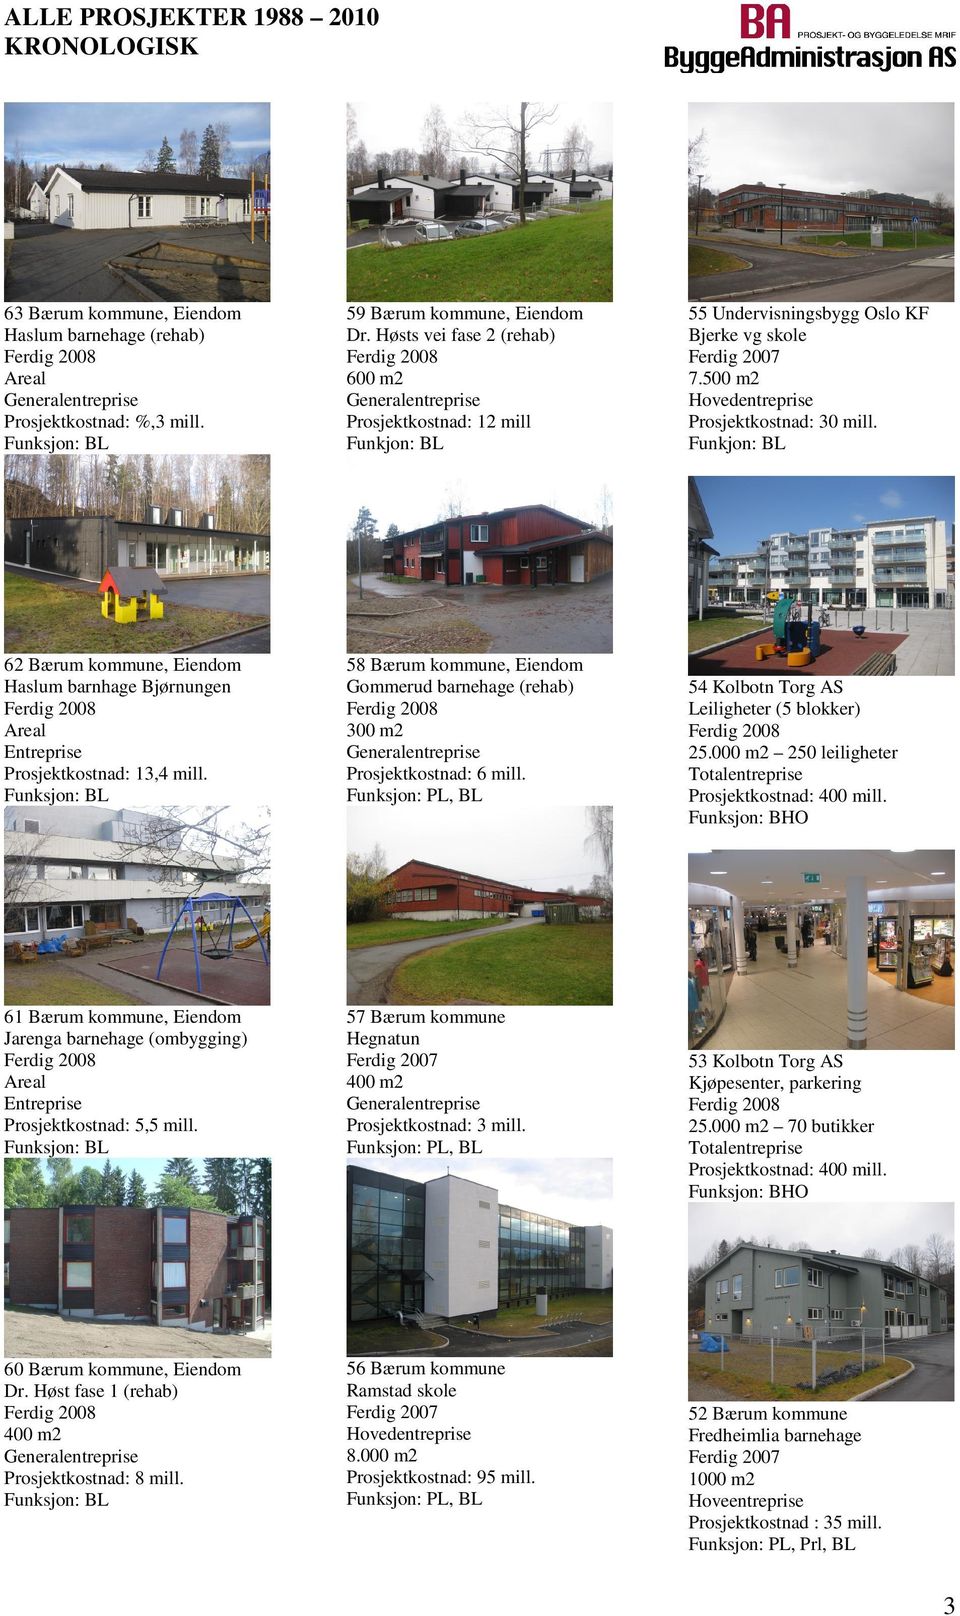 58 Bærum kommune, Eiendom Gommerud barnehage (rehab) 300 m2 Prosjektkostnad: 6 mill. 61 Bærum kommune, Eiendom Jarenga barnehage (ombygging) Areal Entreprise Prosjektkostnad: 5,5 mill.